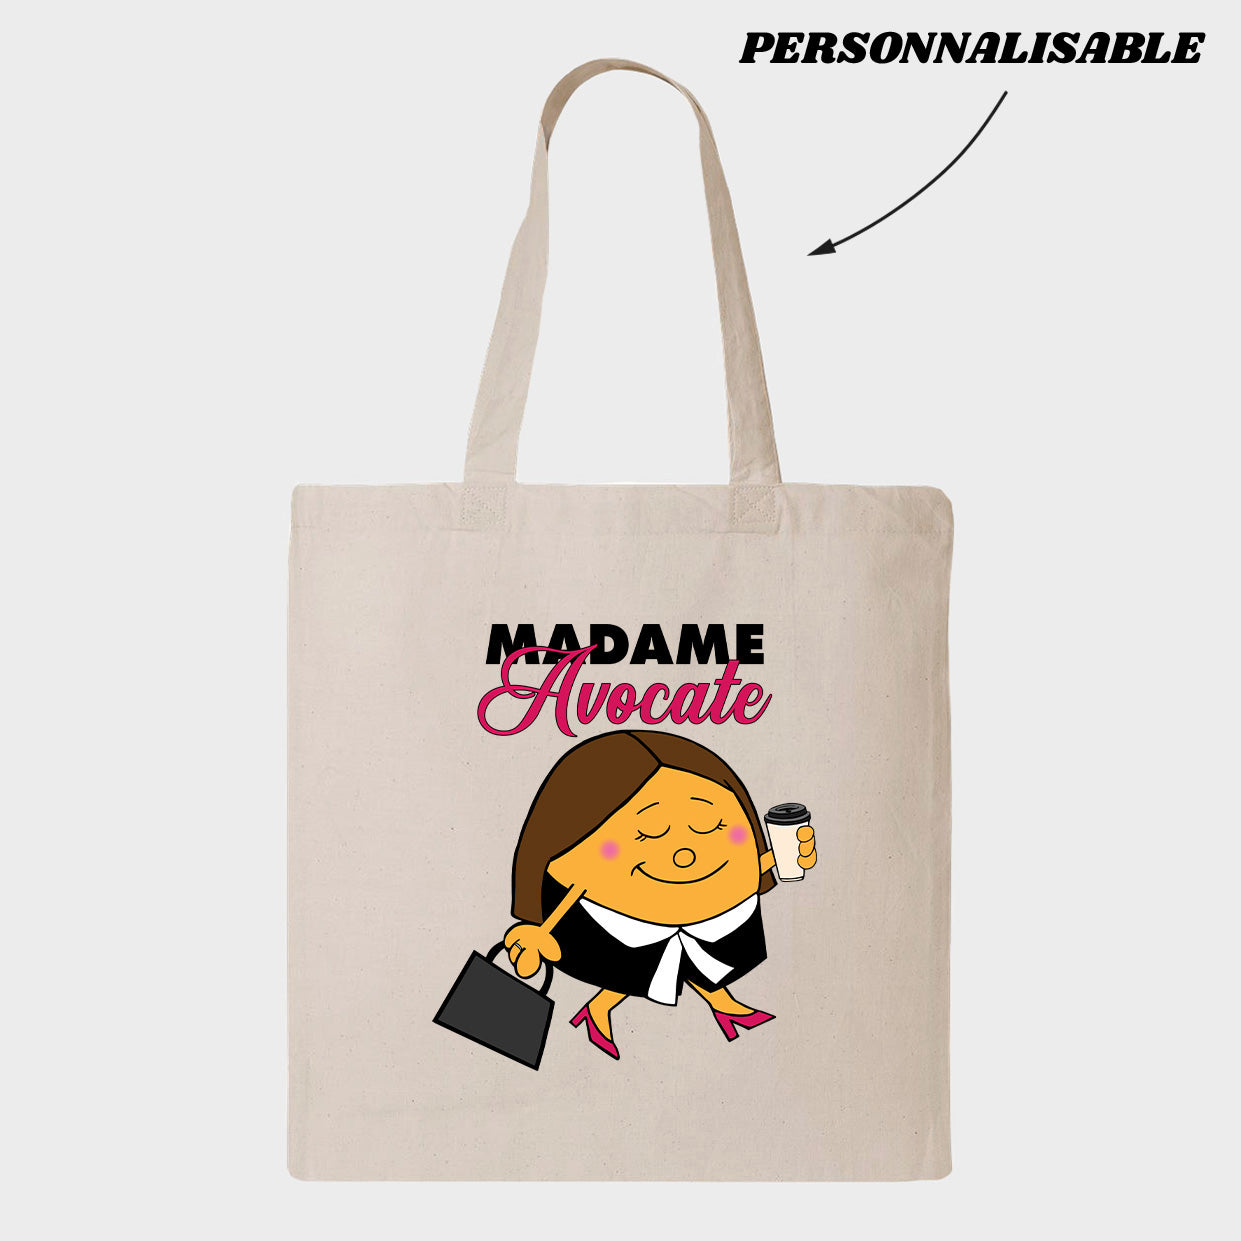 MADAME *PERSONNEL JURIDIQUE* tote bag personnalisable - tamelo boutique